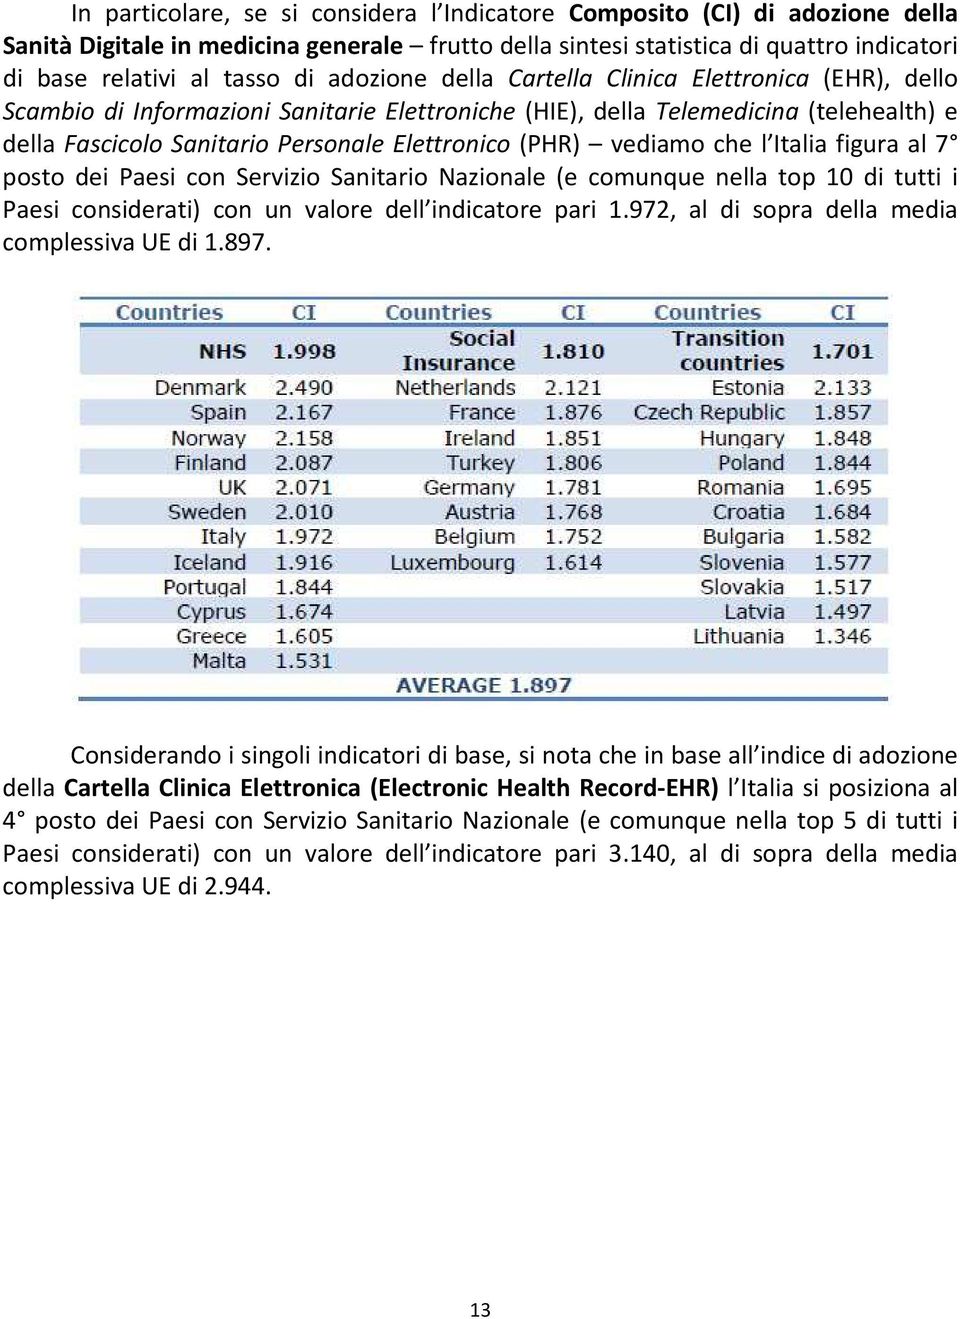 vediamo che l Italia figura al 7 posto dei Paesi con Servizio Sanitario Nazionale (e comunque nella top 10 di tutti i Paesi considerati) con un valore dell indicatore pari 1.